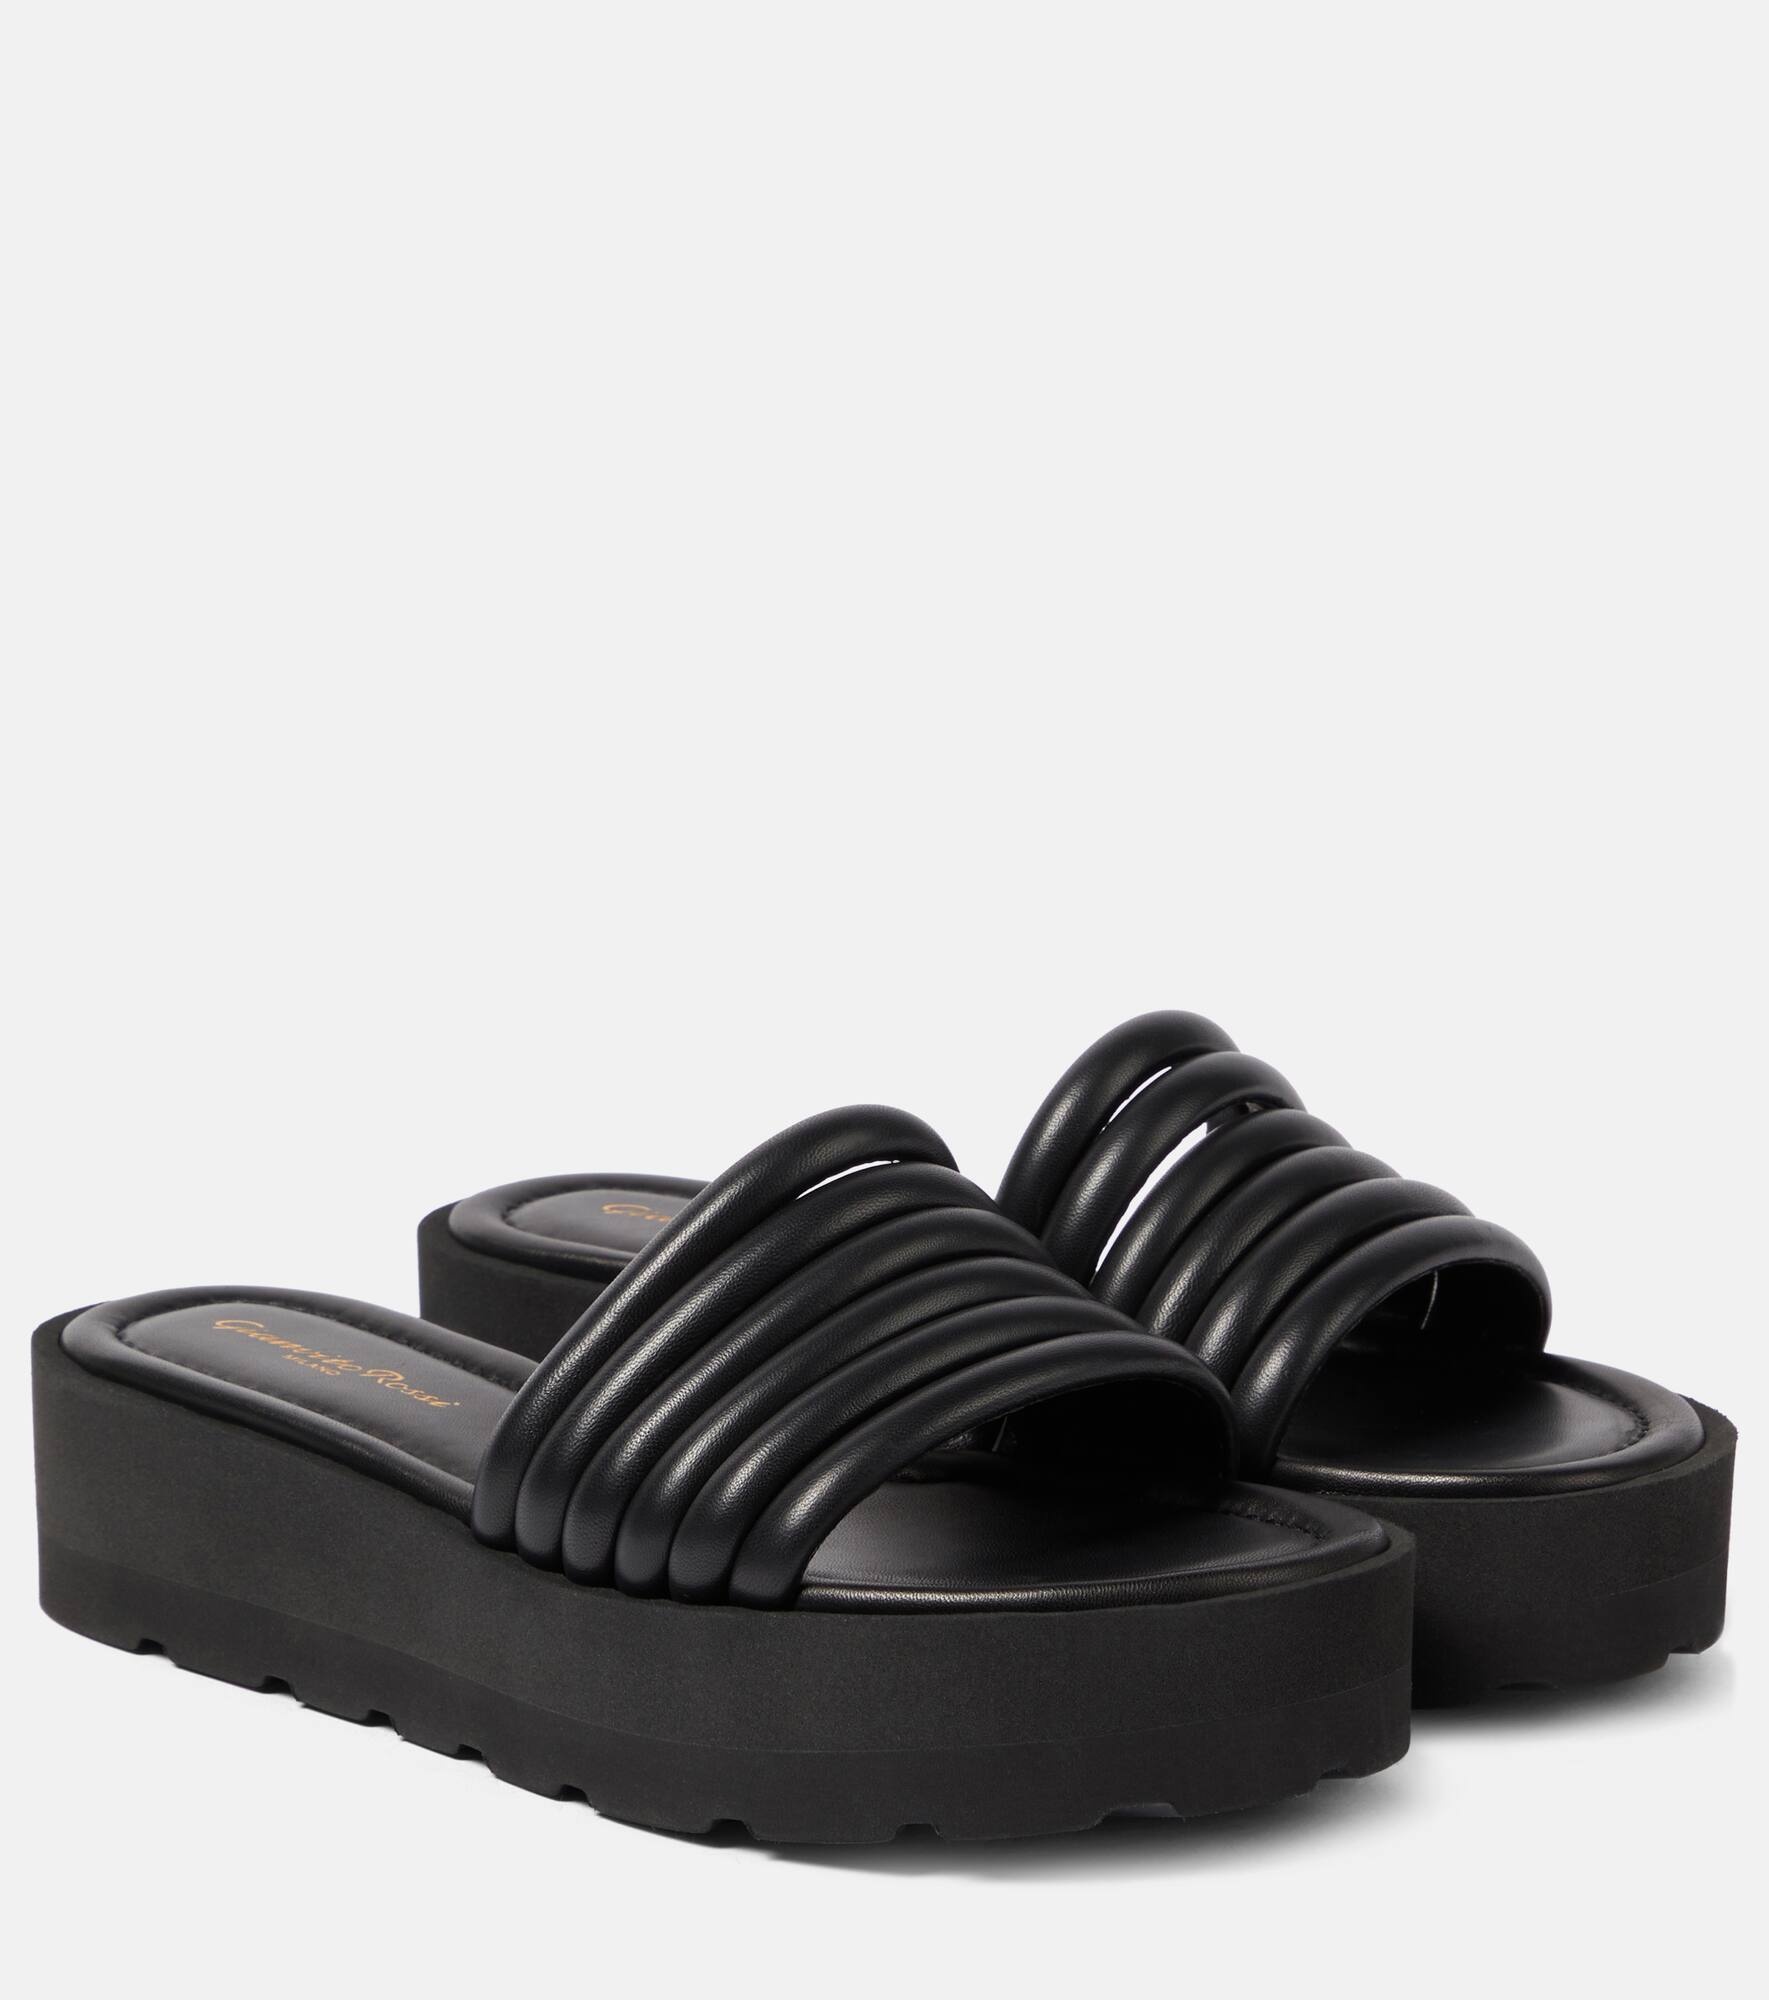 Leather platform sandals - 1